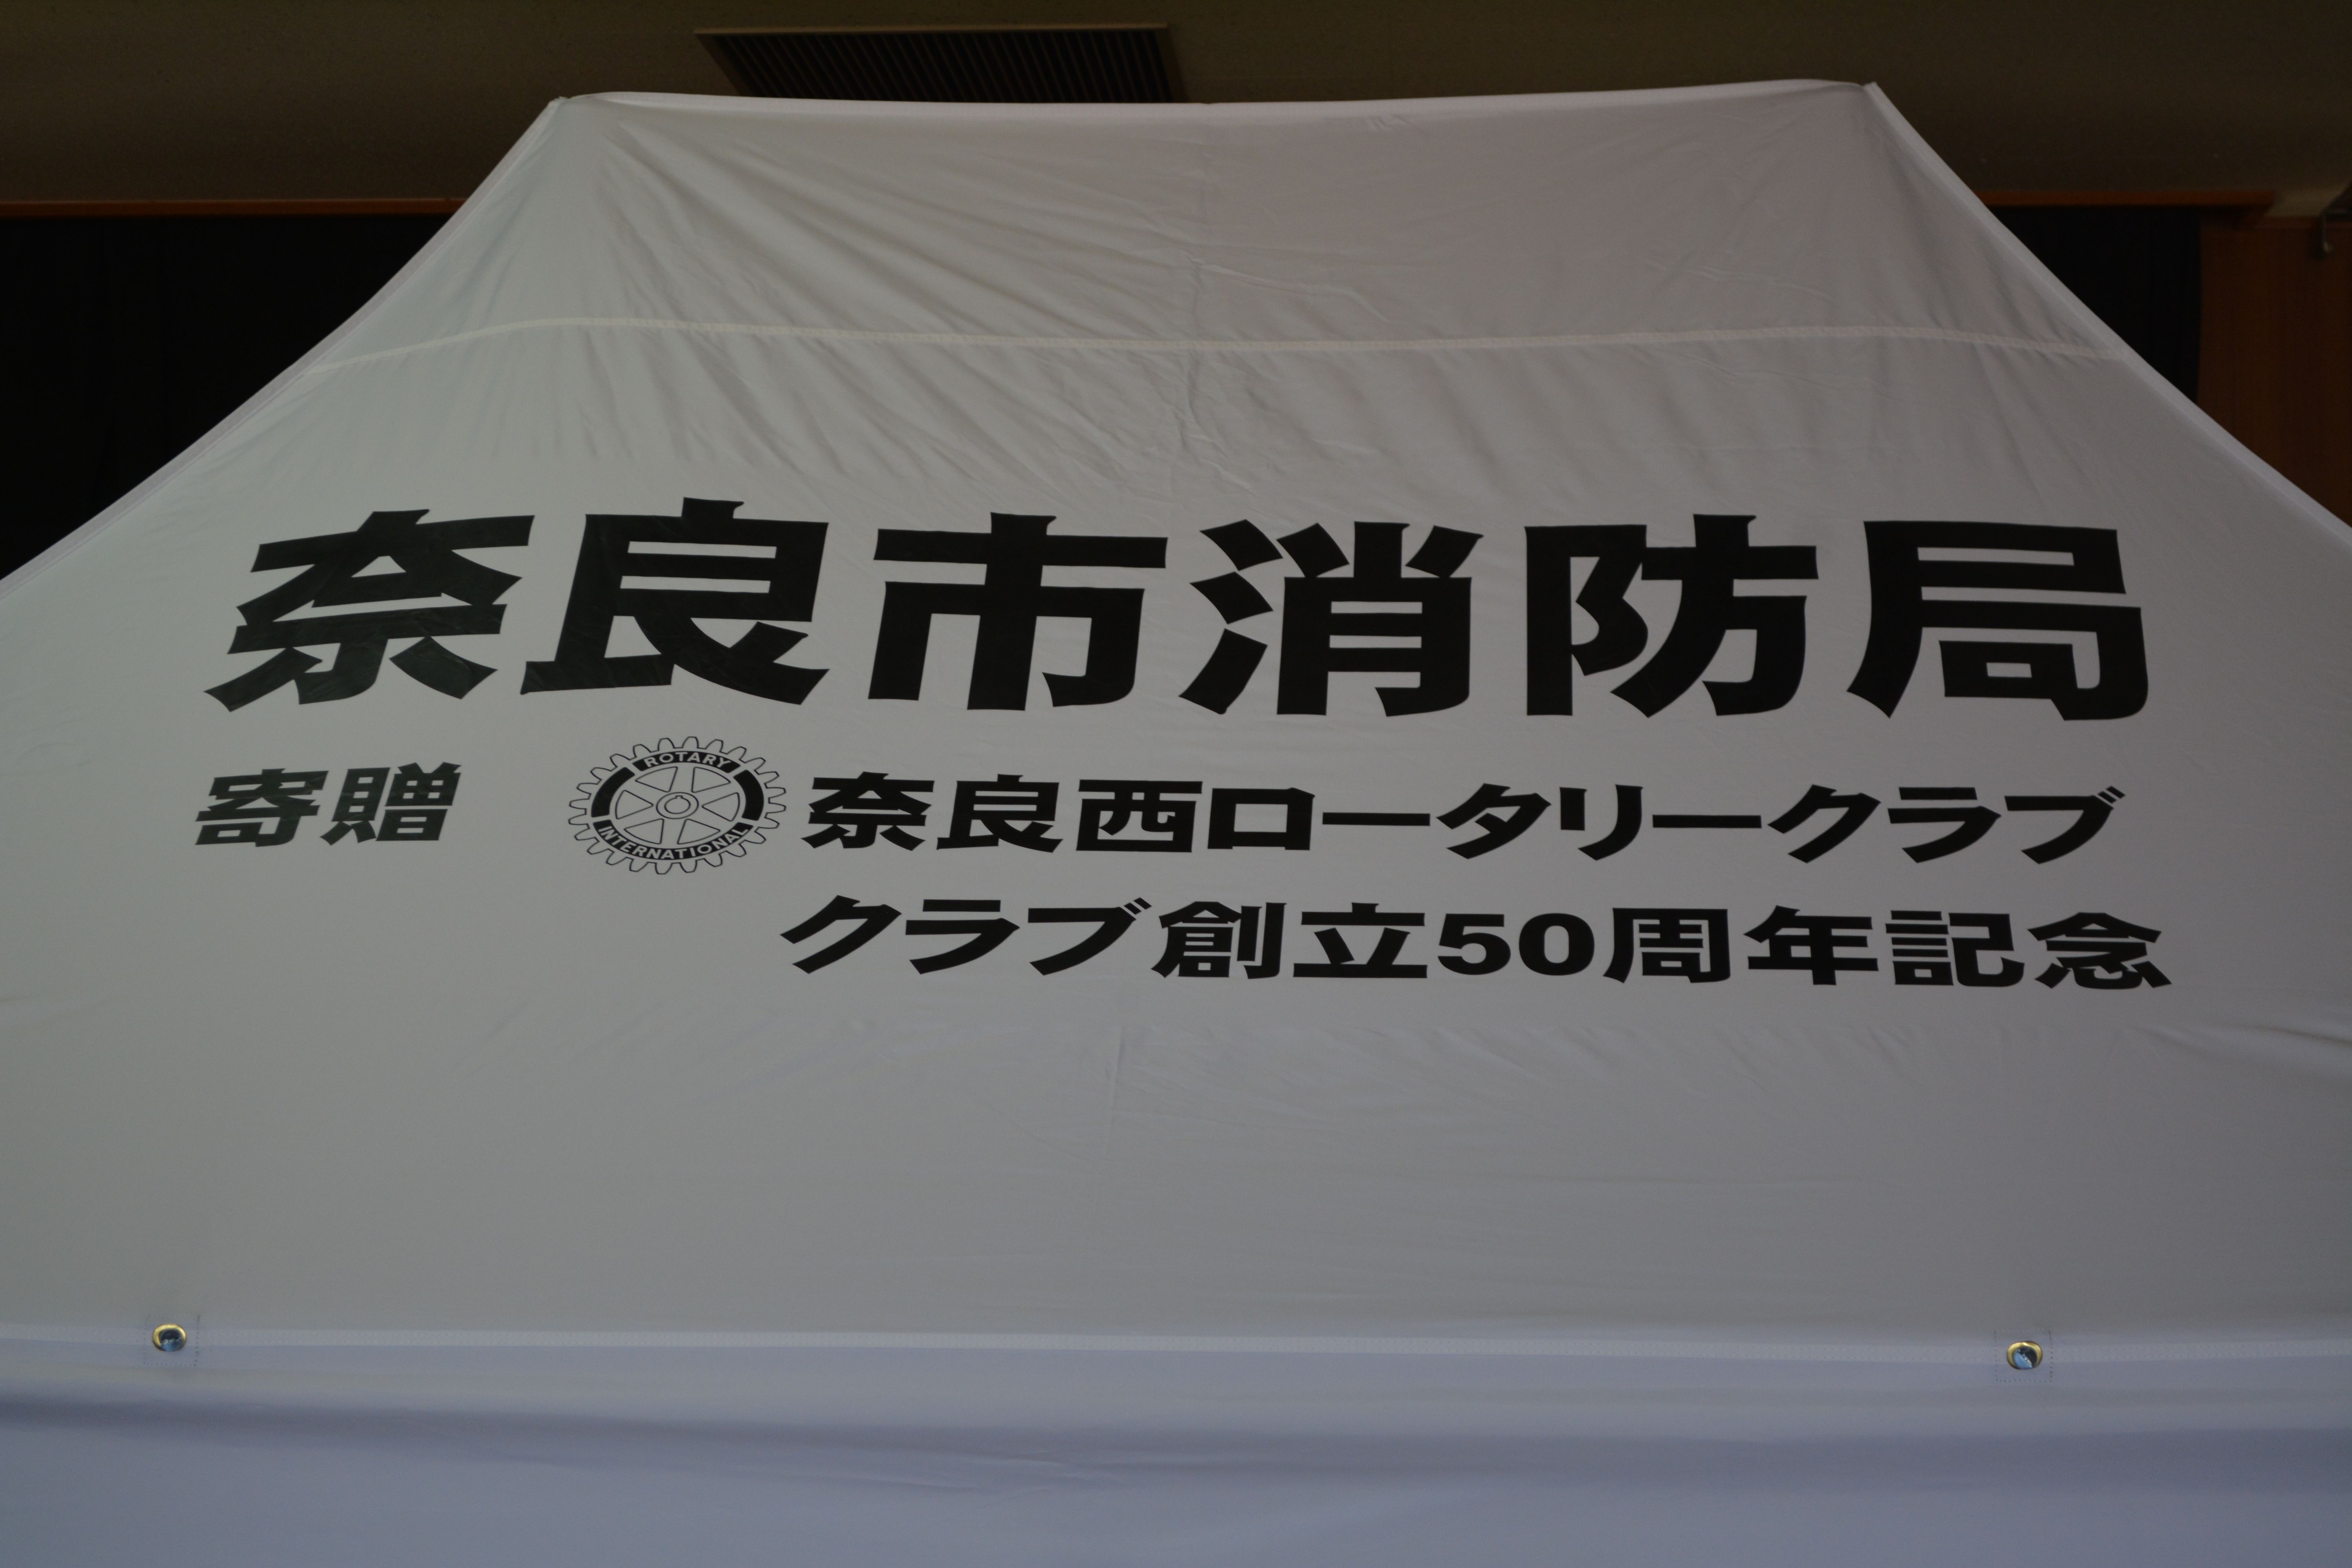 奈良西ロータリークラブから奈良市に簡易型テントを寄贈いただきましたの画像2